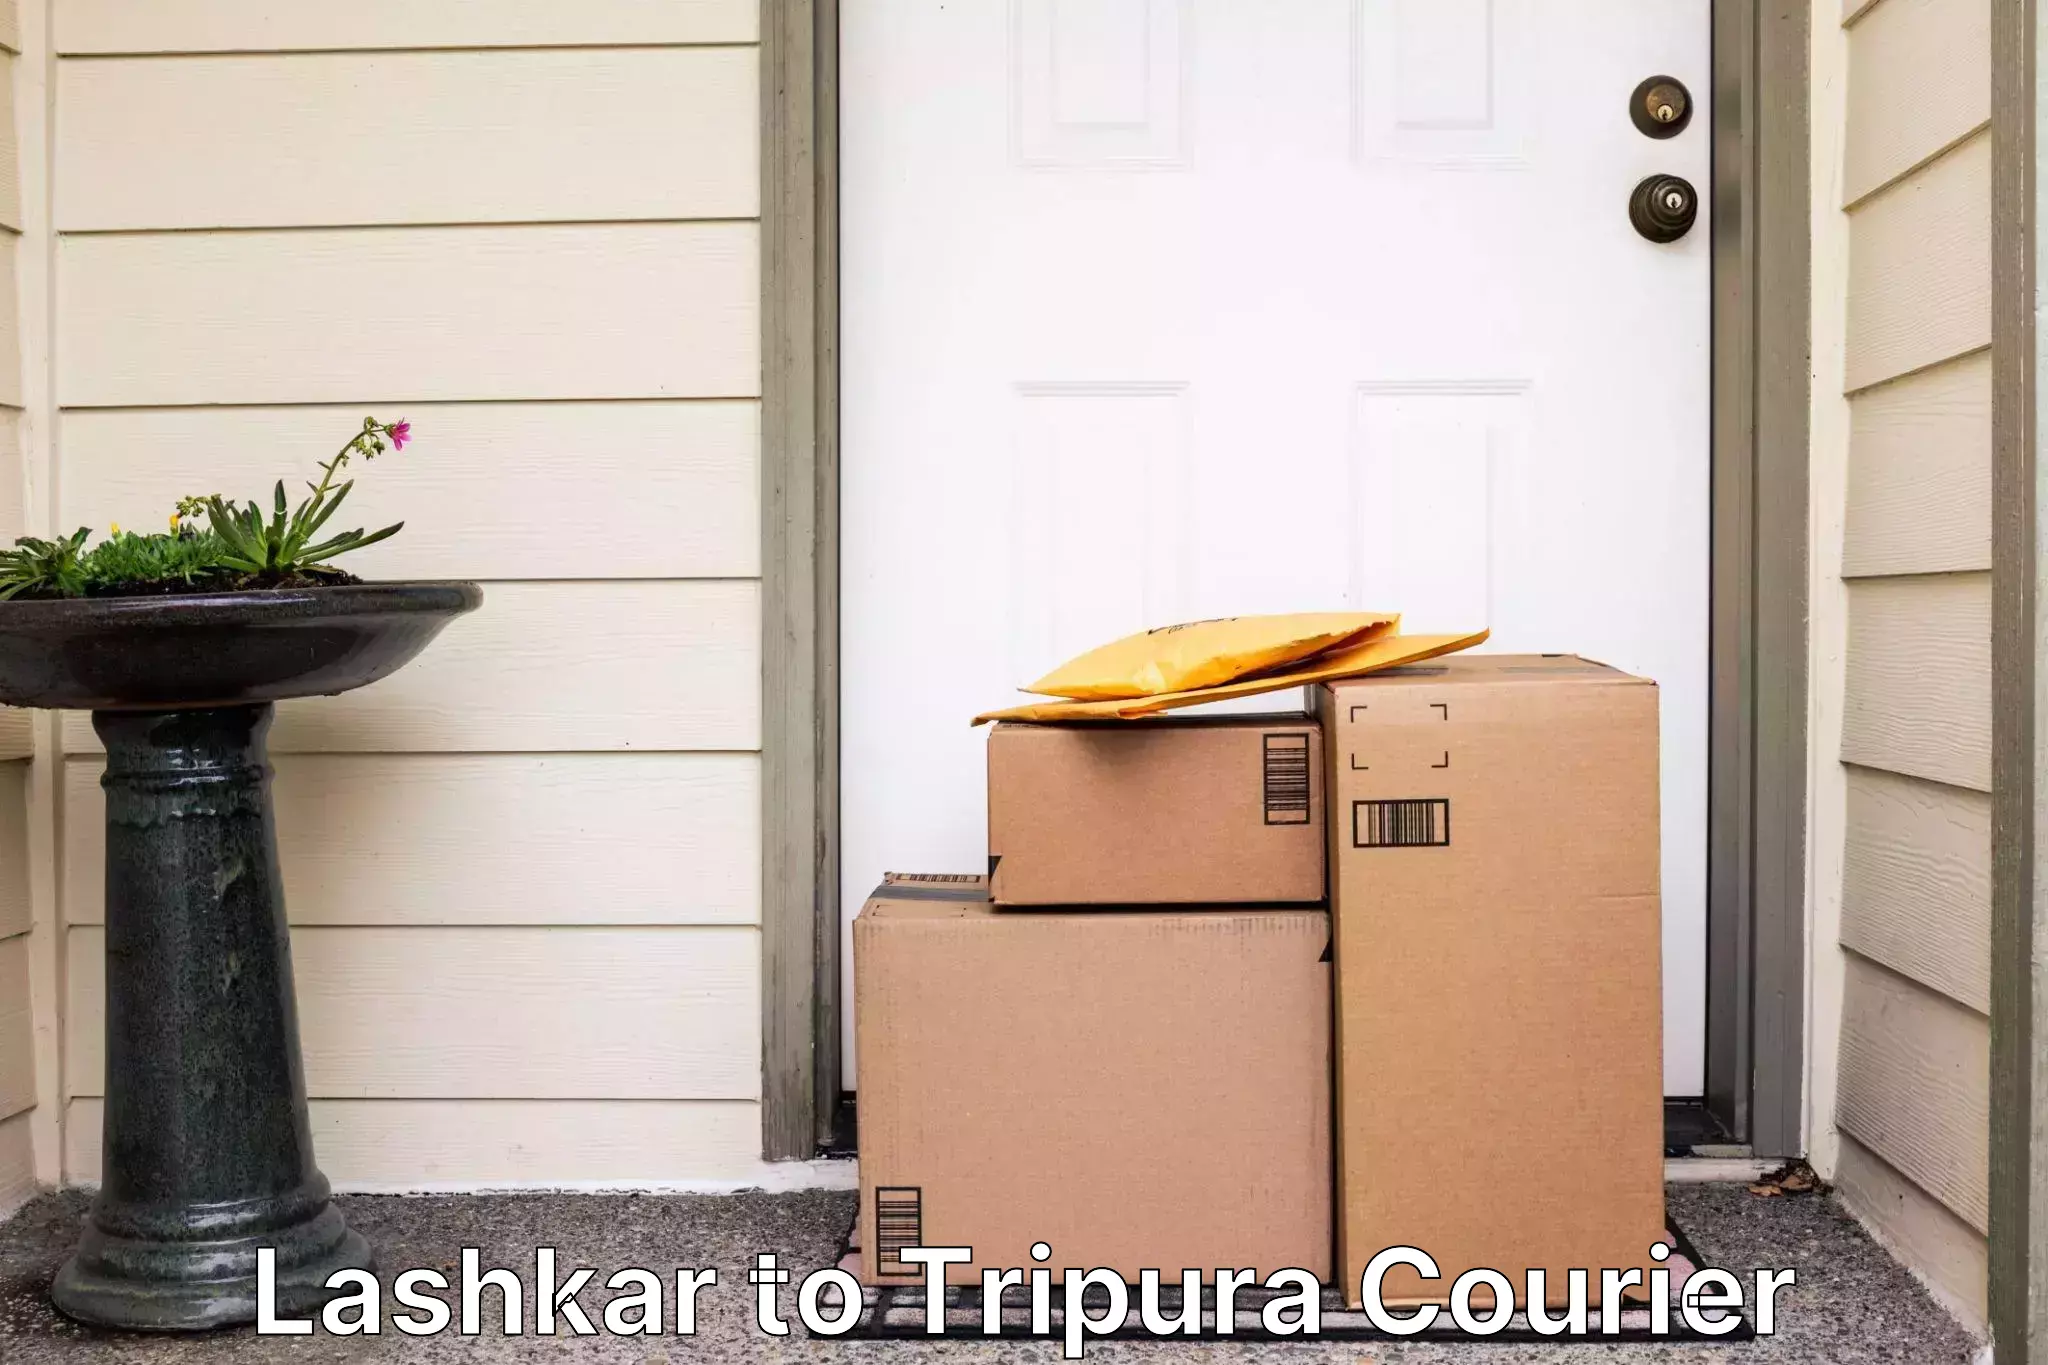 Fast delivery service Lashkar to Tripura